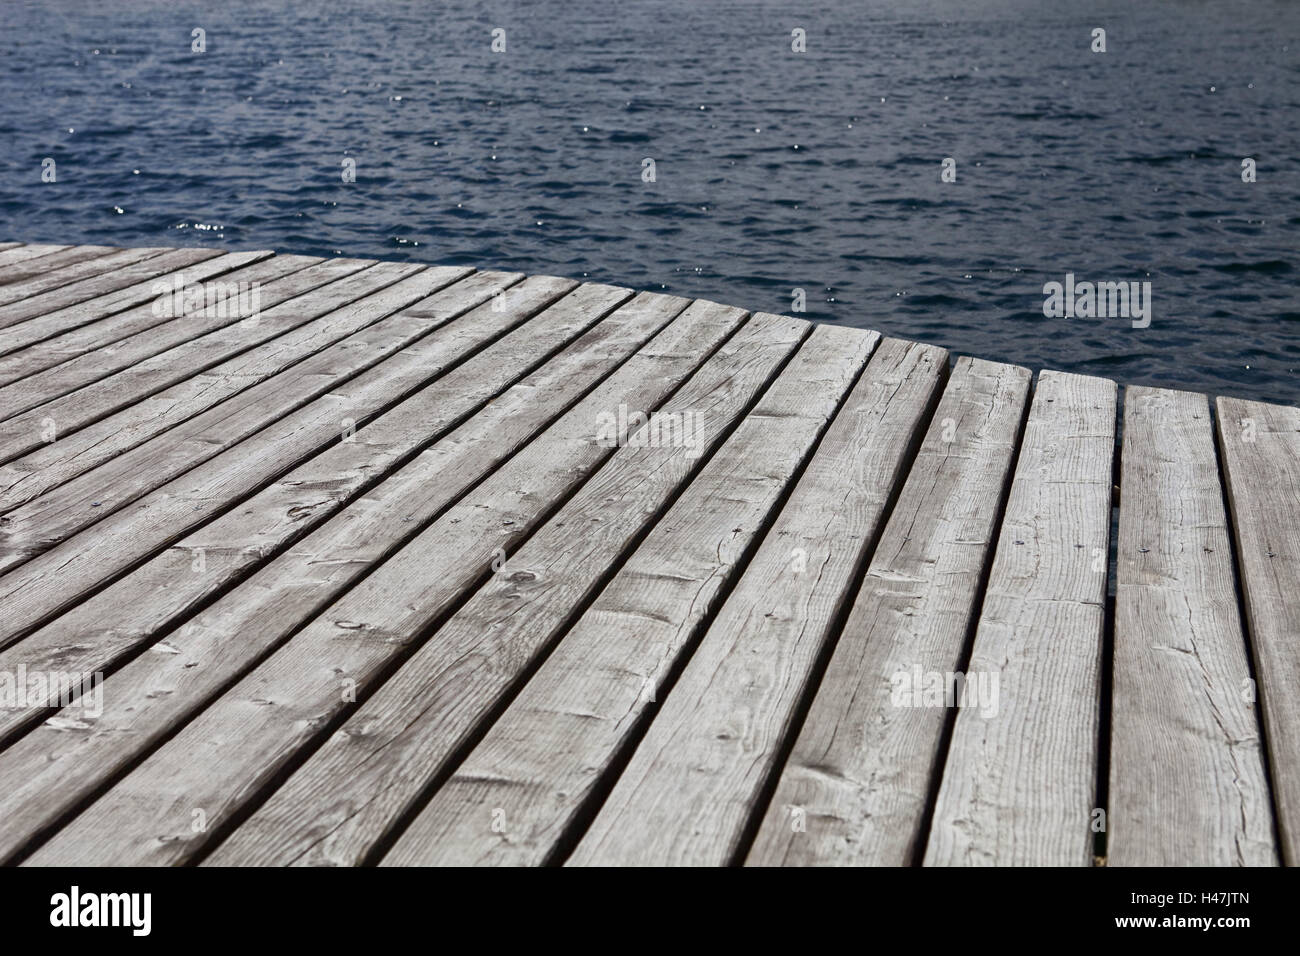 Pontile in legno, lago, bridge, acque, solitudine, di riposo e di svago, natura, esterno, barca investitore, in fase di sbarco, Foto Stock